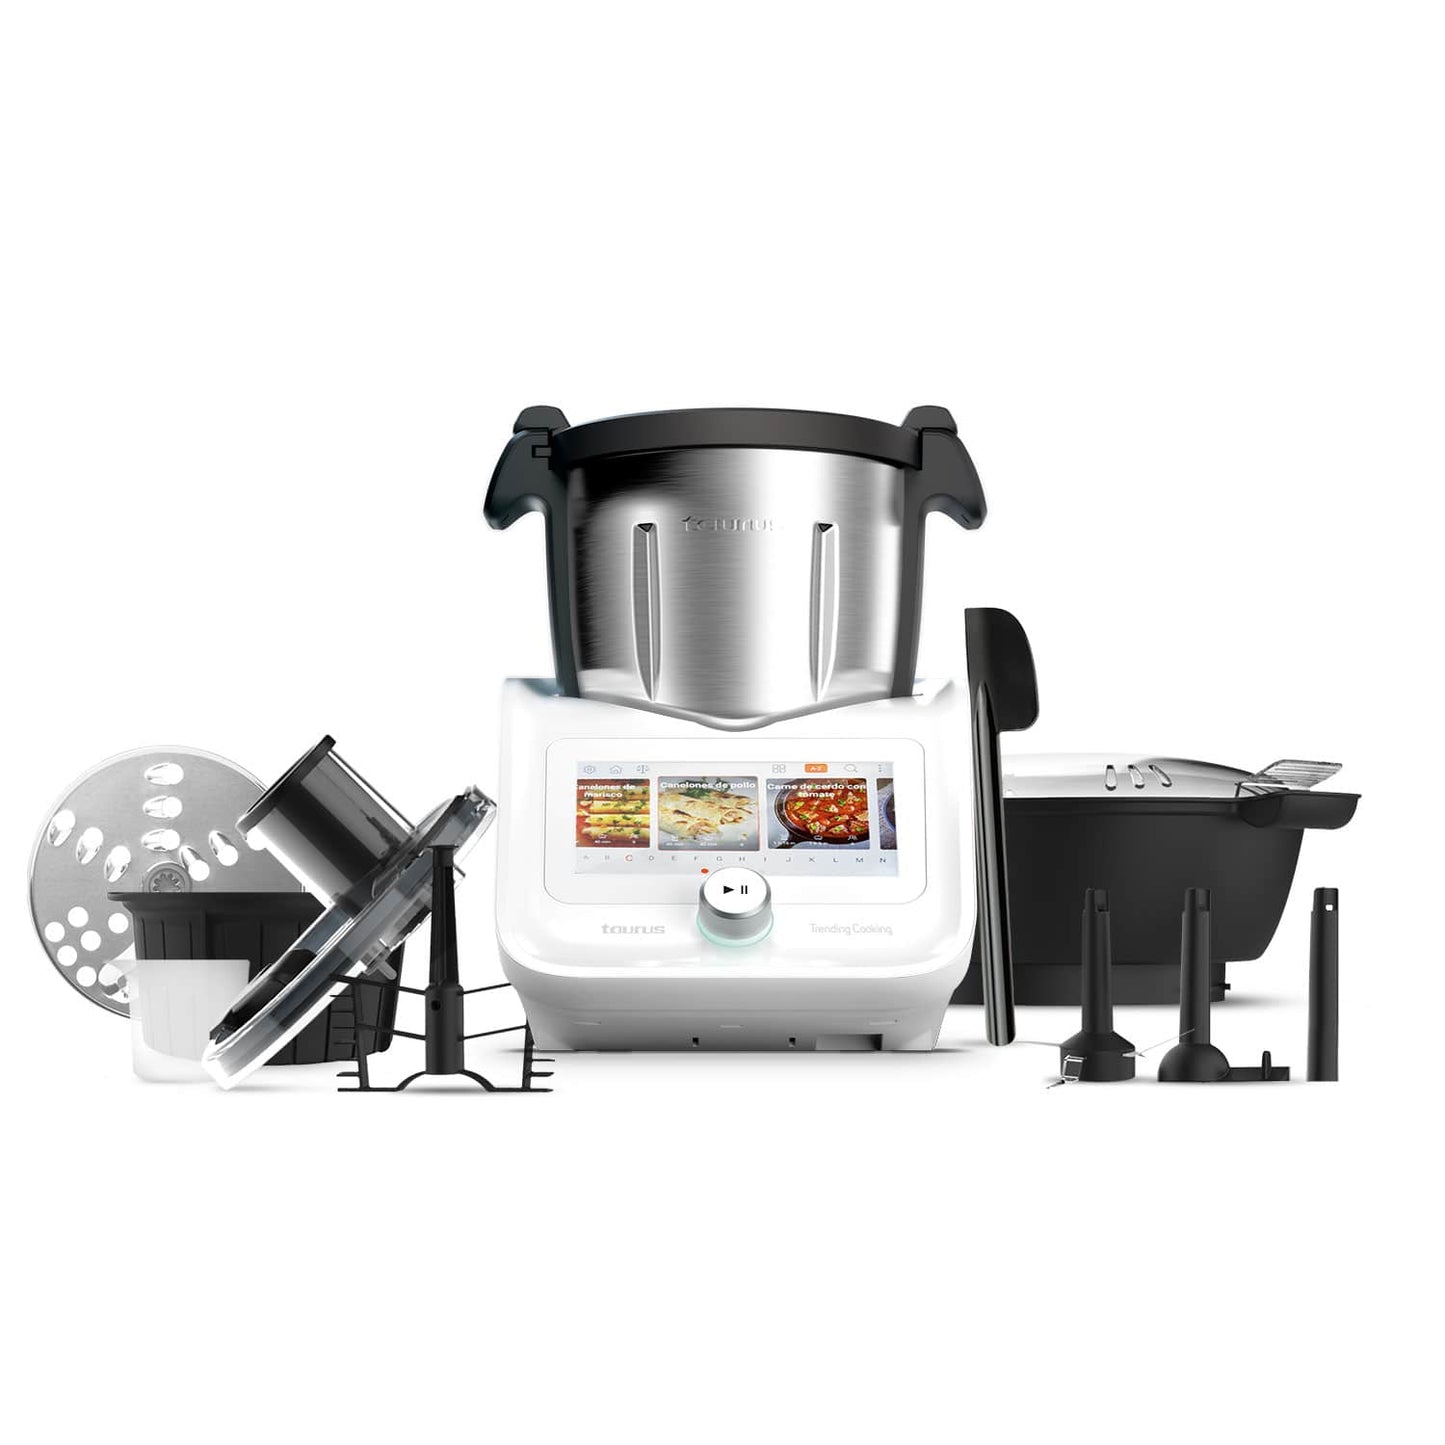 Robot de cocina, robot, Robot de cocina multifunción, robot cocina recetas, thermomix; cecotec; moulinex; newcook, prixton; ikhos; superchef; kenwood; mycook